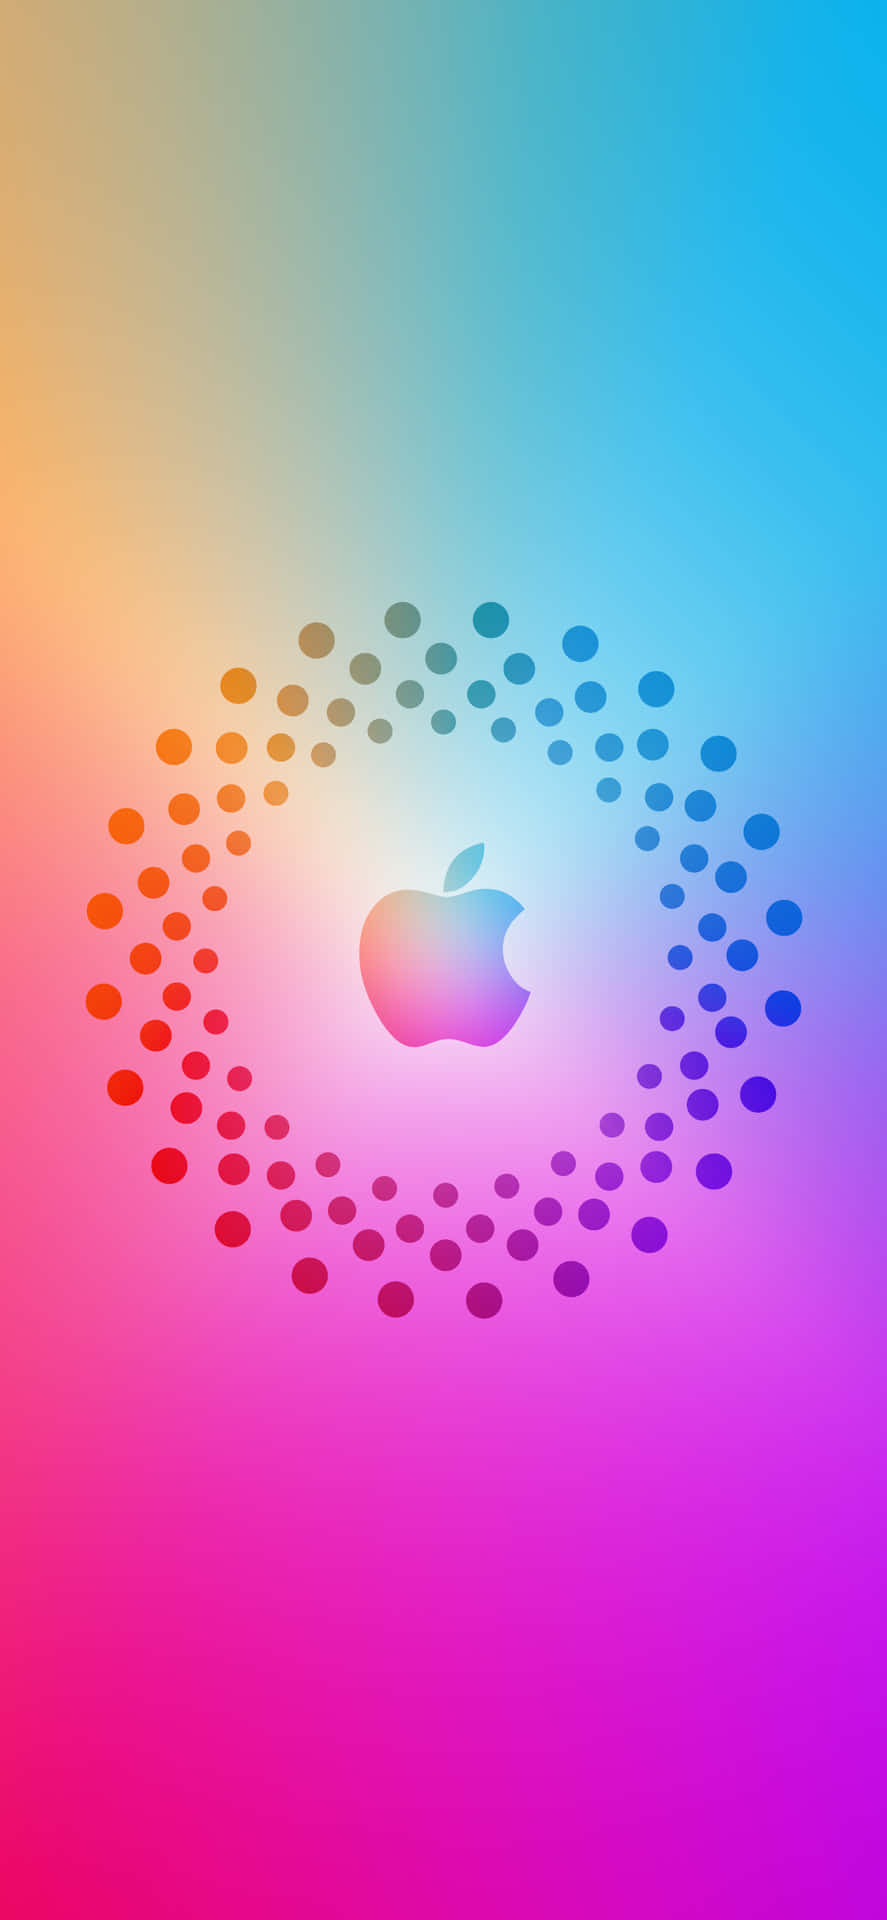 Logocon Puntos Increíble Apple Hd Iphone. Fondo de pantalla